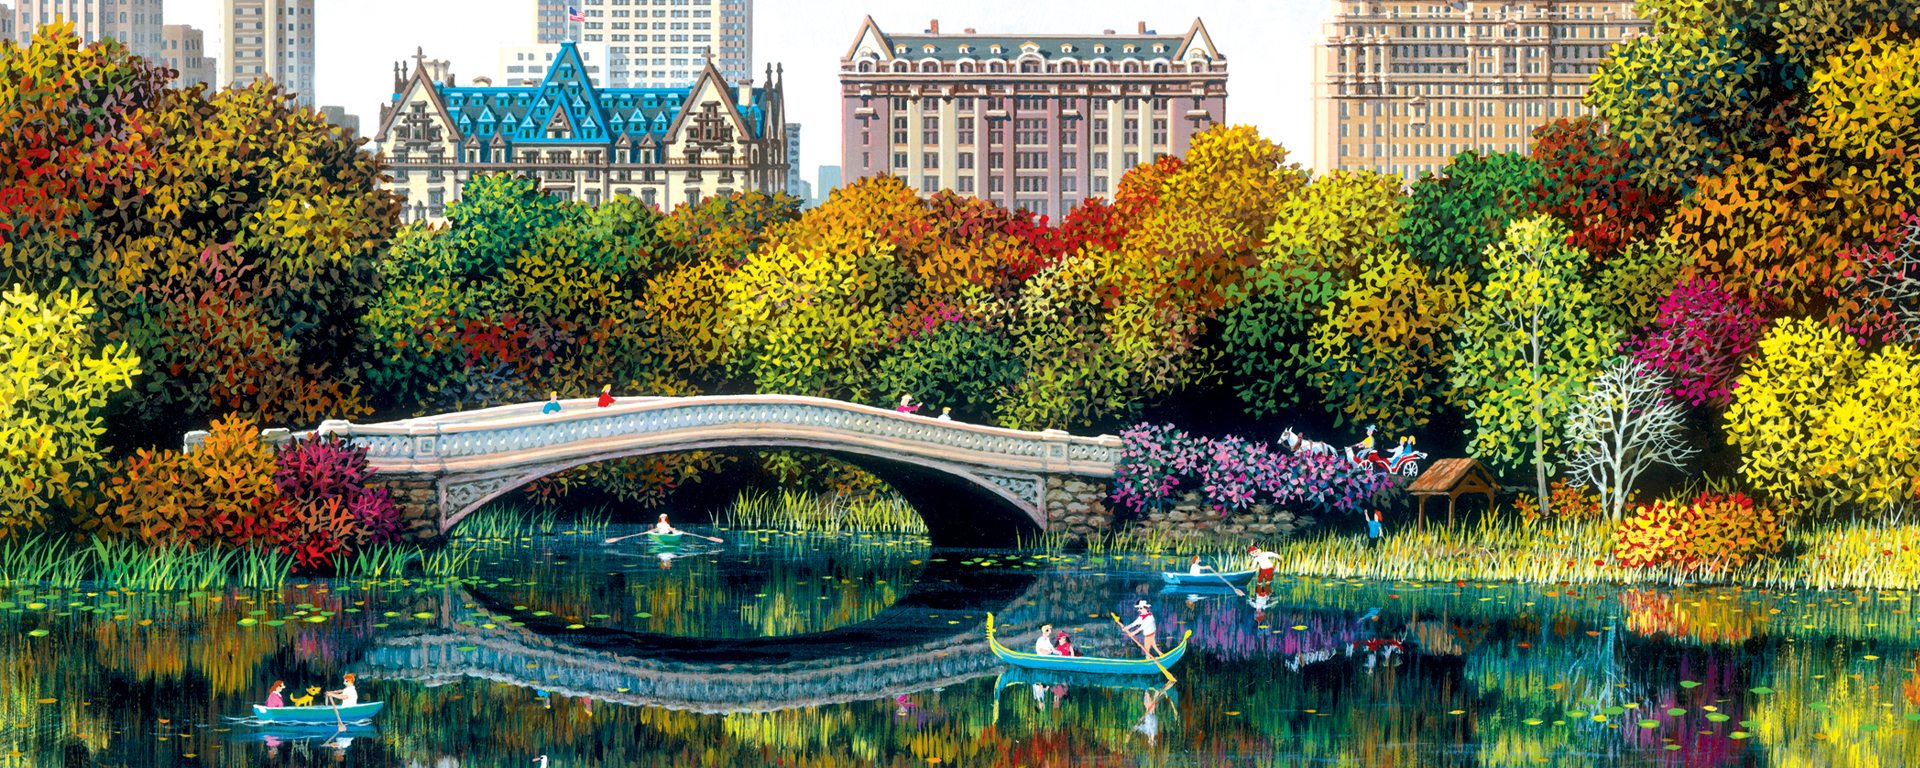 Educa (17136) - Alexander Chen: Central Park Bow Bridge - 8000 pieces  puzzle